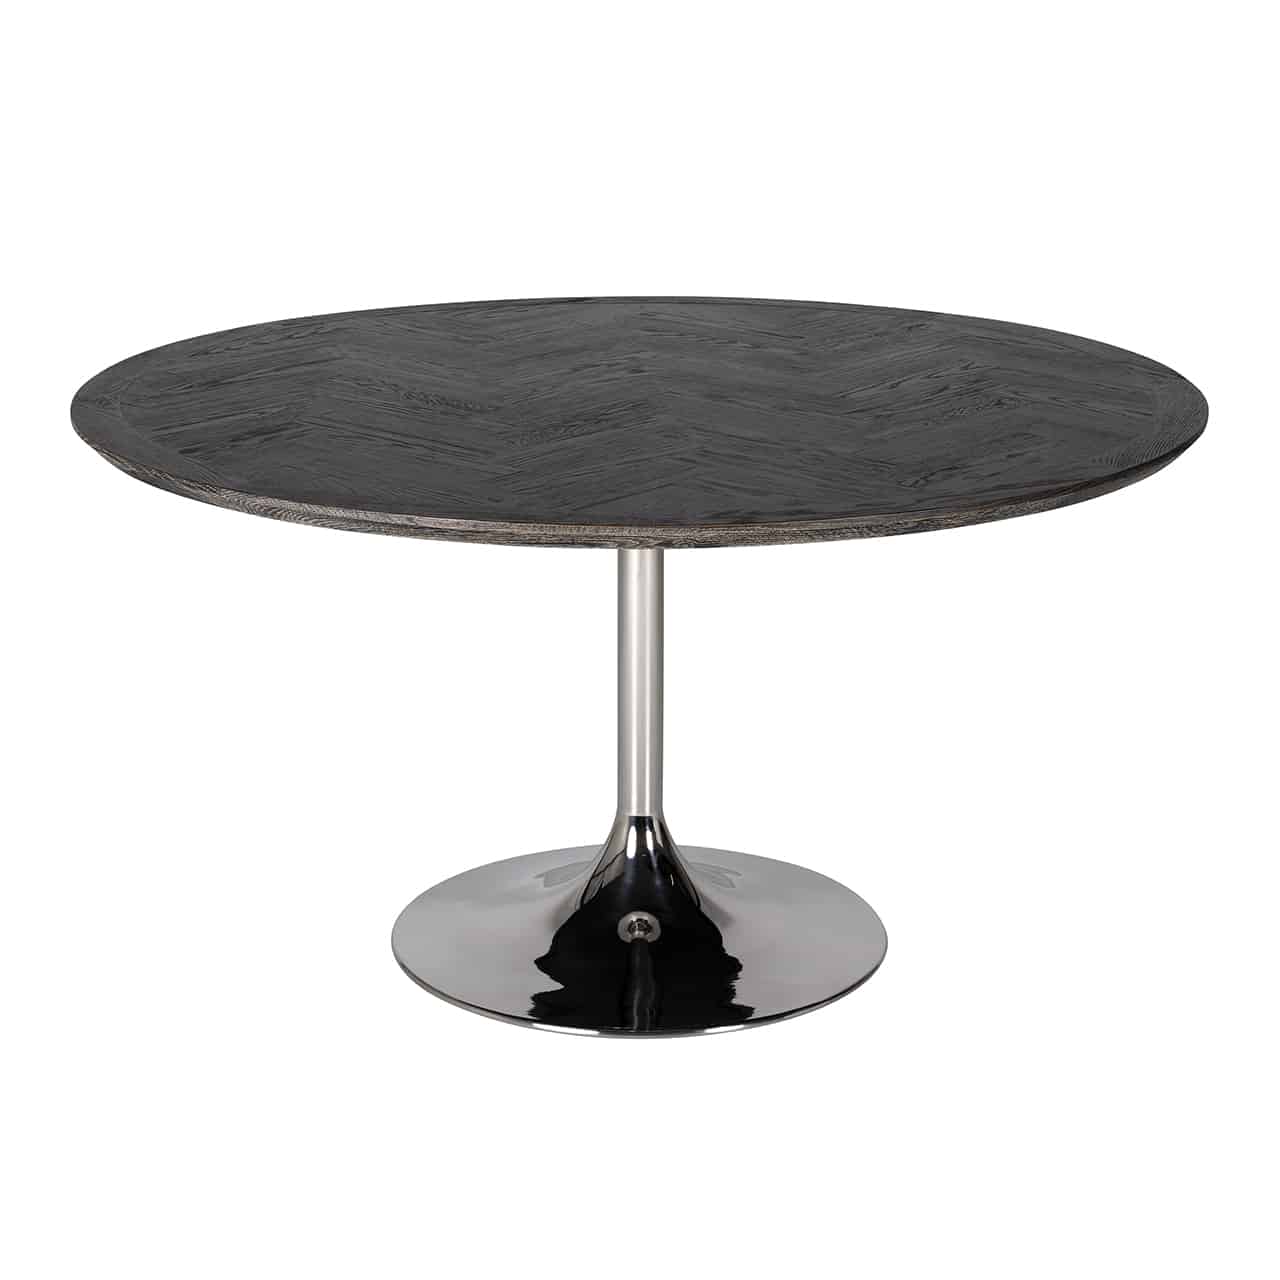 Esstisch, bestehend aus einem silber glänzendem, röhrenförmigen Fuß auf einem großen Bodenteller, darauf eine runde Tischplatte aus braun-schwarzem Eichenholz.